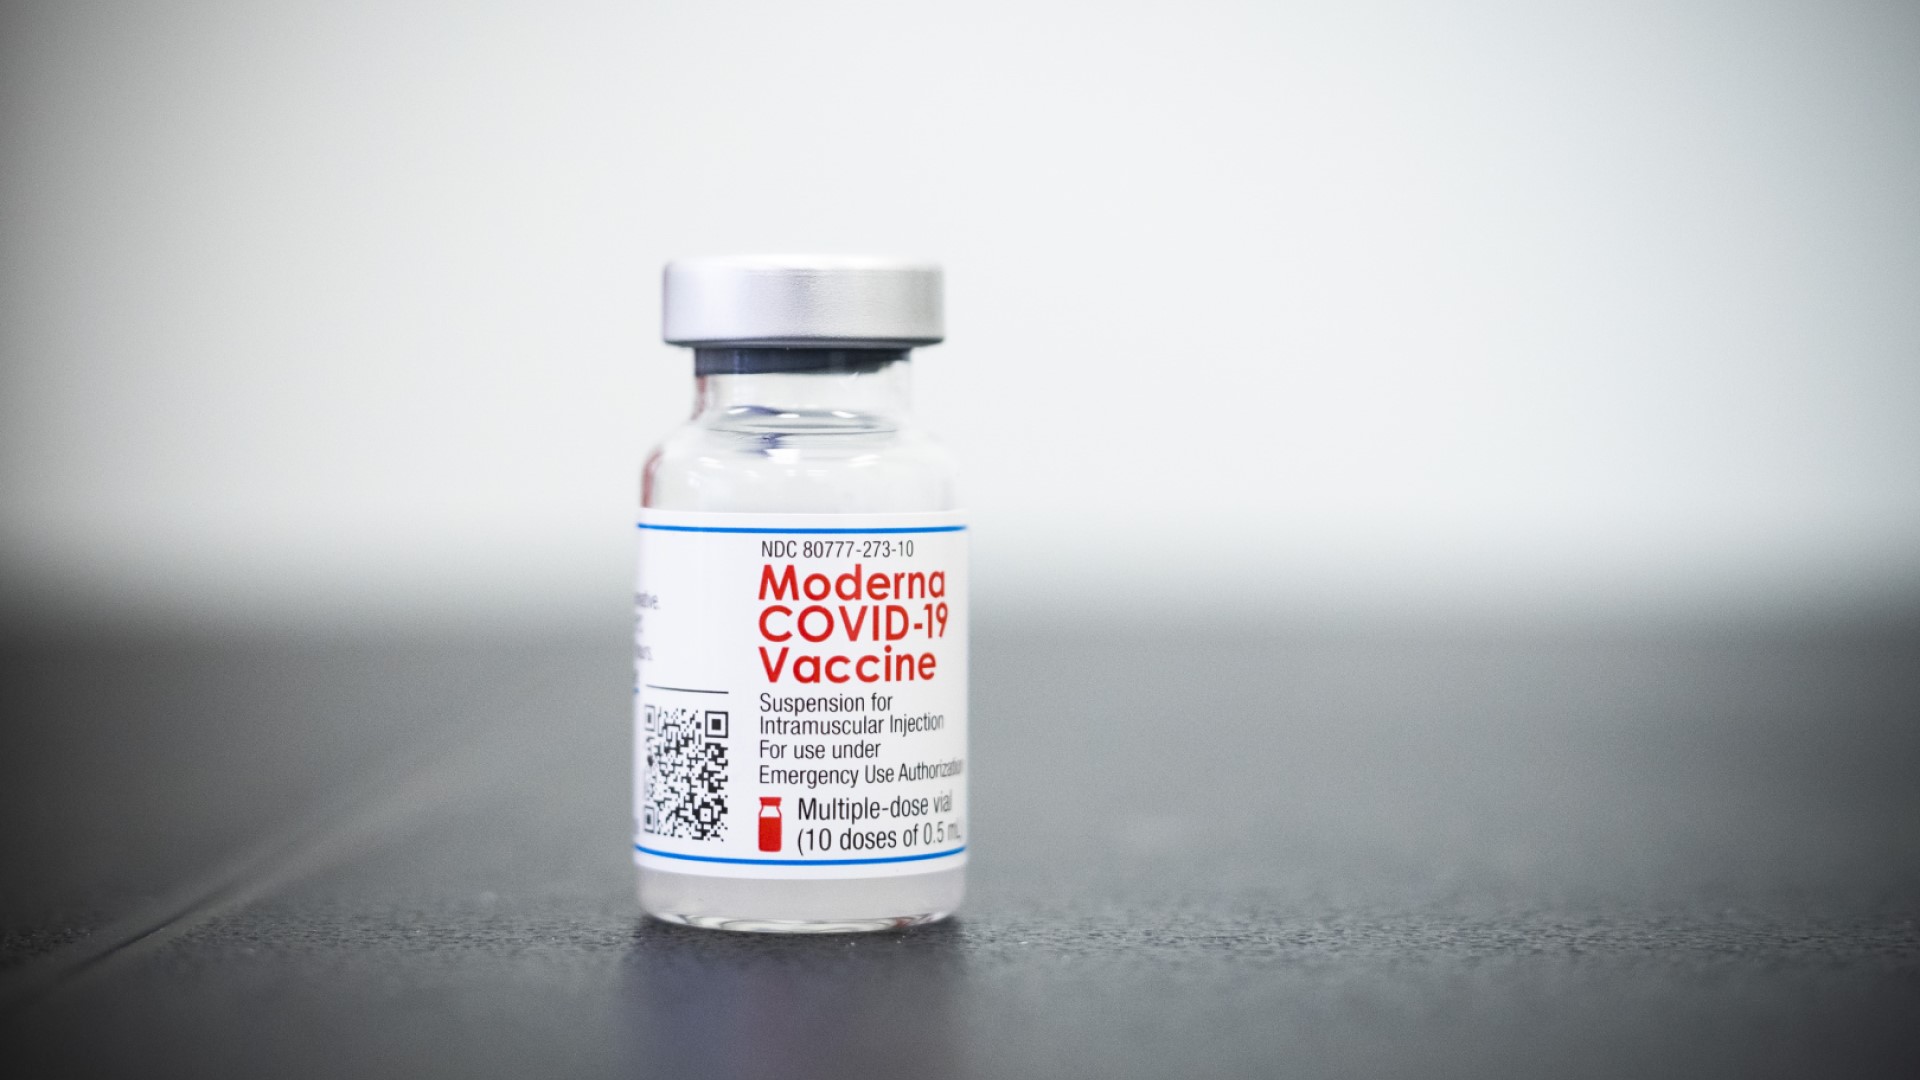 โมเดอร์นาขออนุญาต อ.ย. สหรัฐฯ ใช้วัคซีนโควิด – 19 กรณีฉุกเฉินในเด็ก 12 – 17 ปี